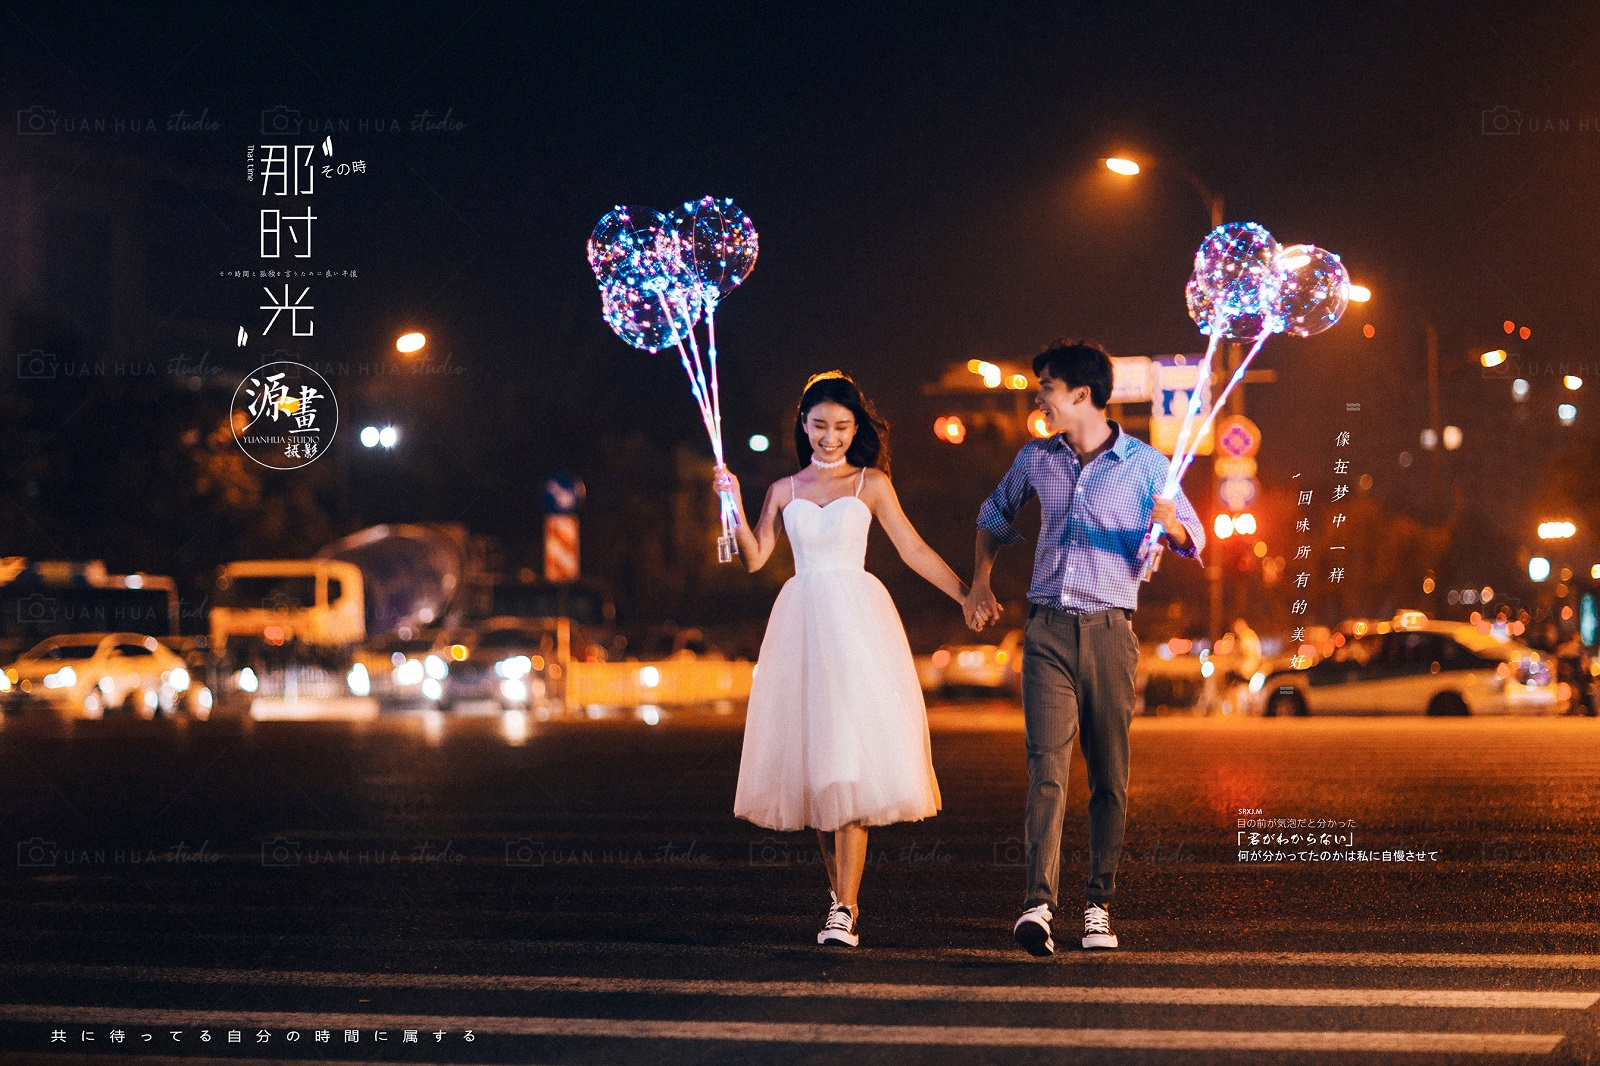 【夜景街拍】网红波波球婚纱照|不一样的夜景婚纱照